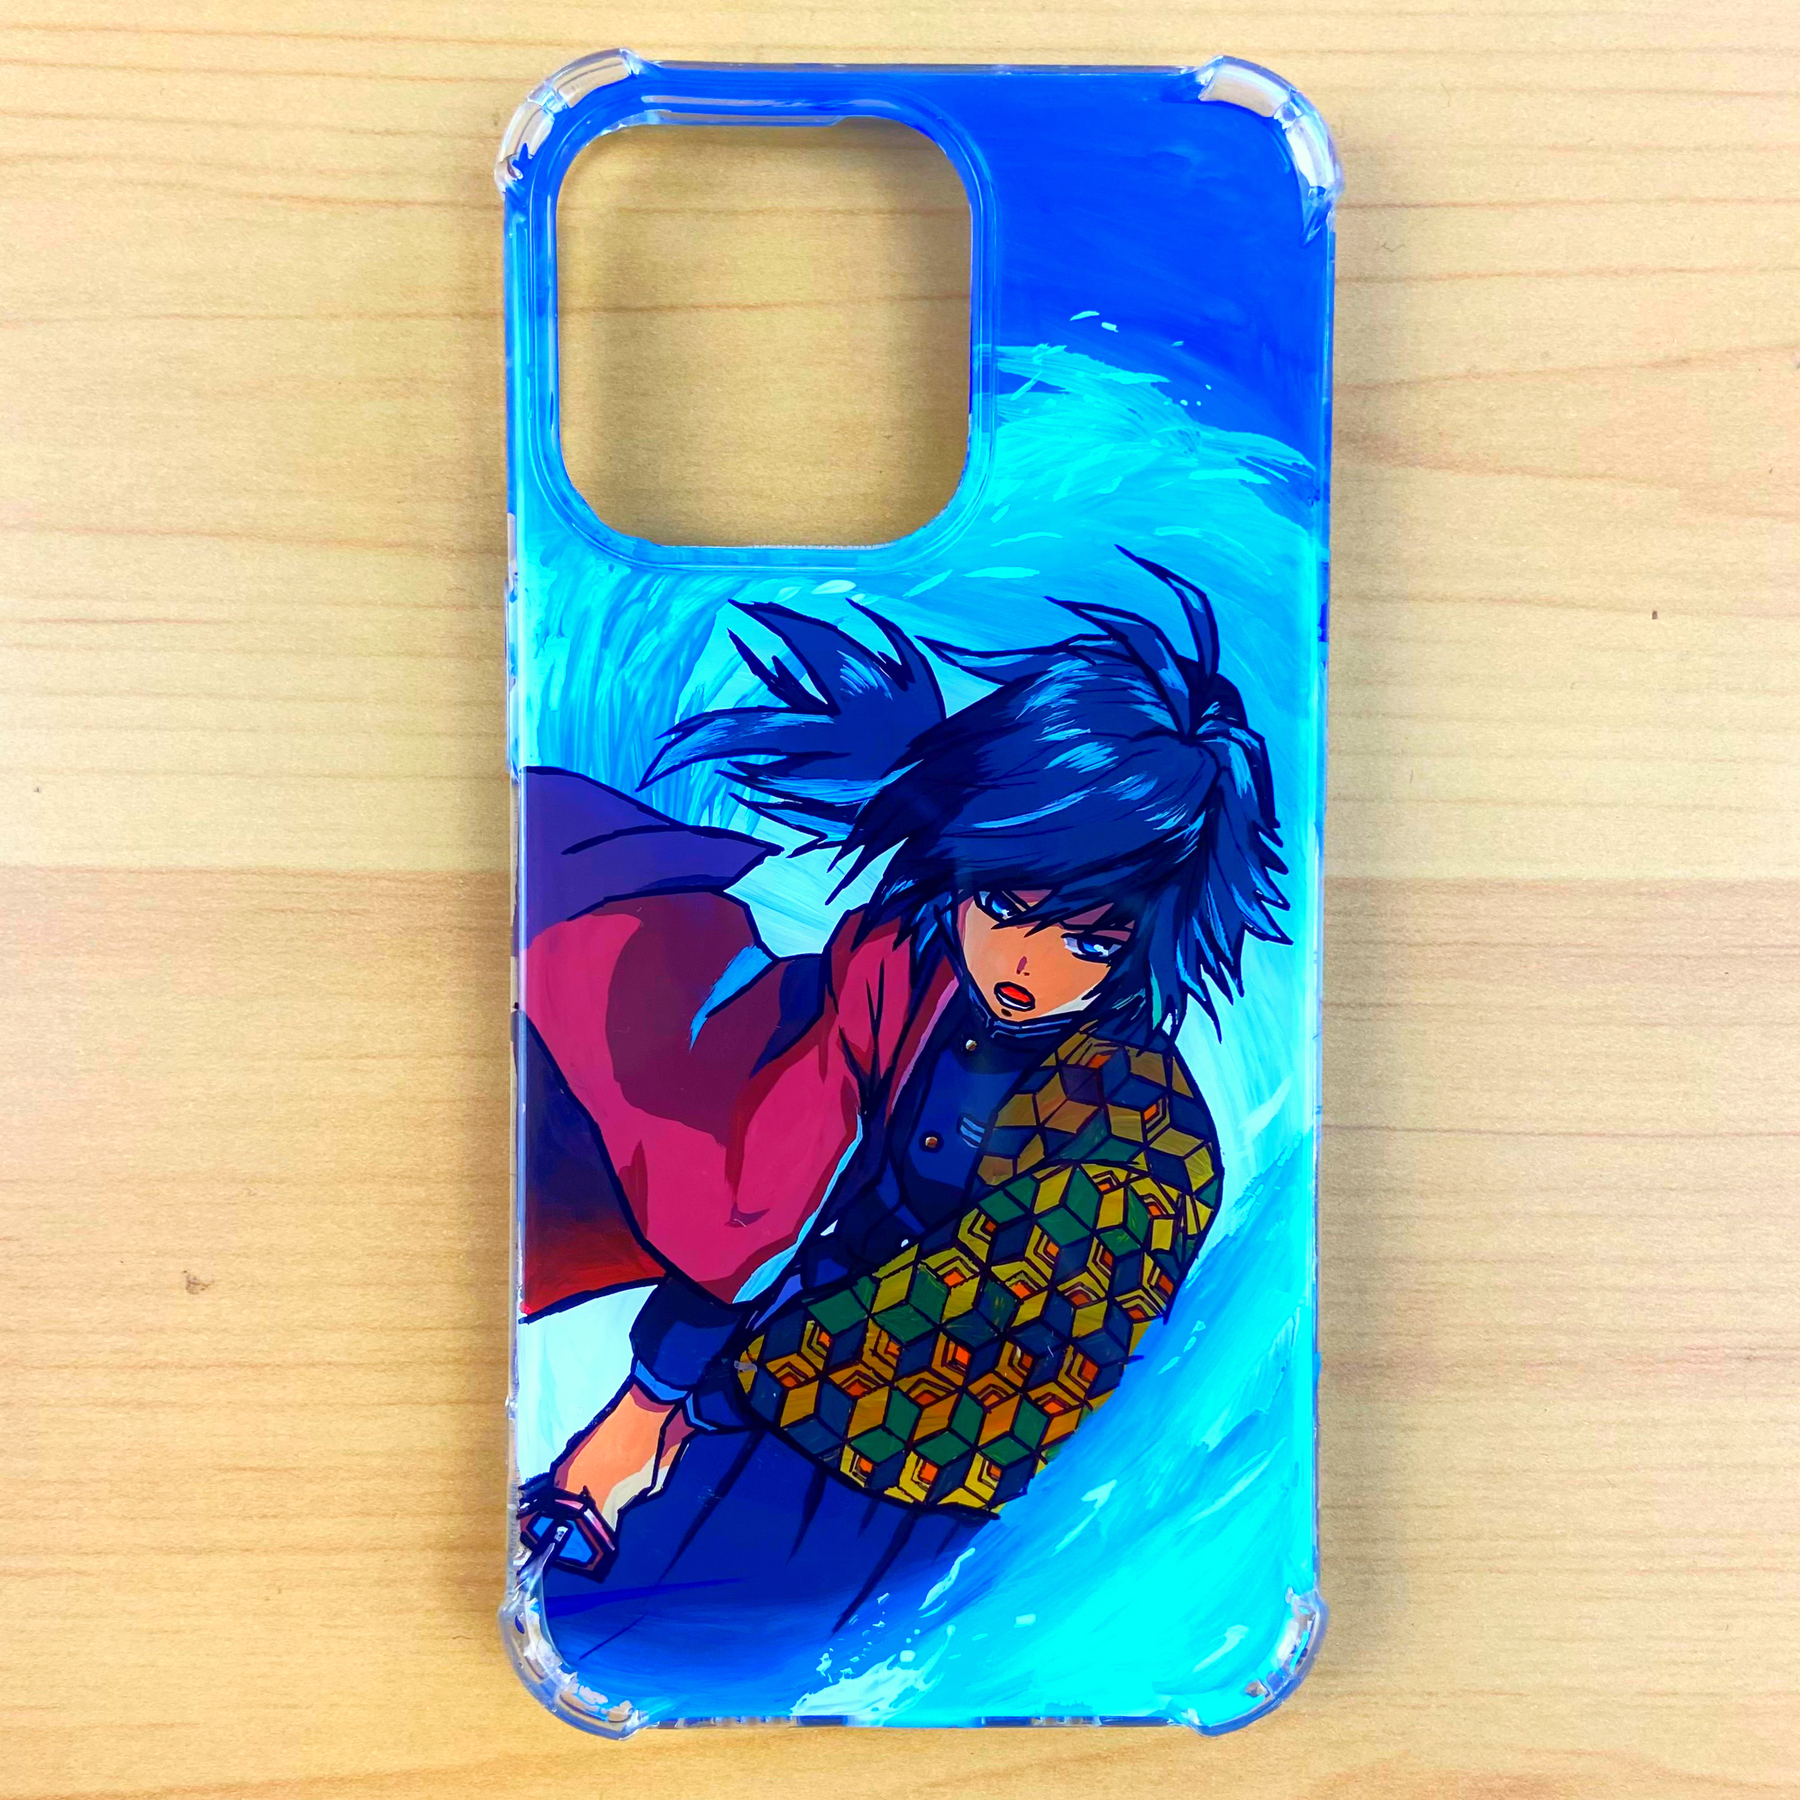 Anime Case, Anime Phone Case, Anime Girl Case, Anime Tough Case | eBay